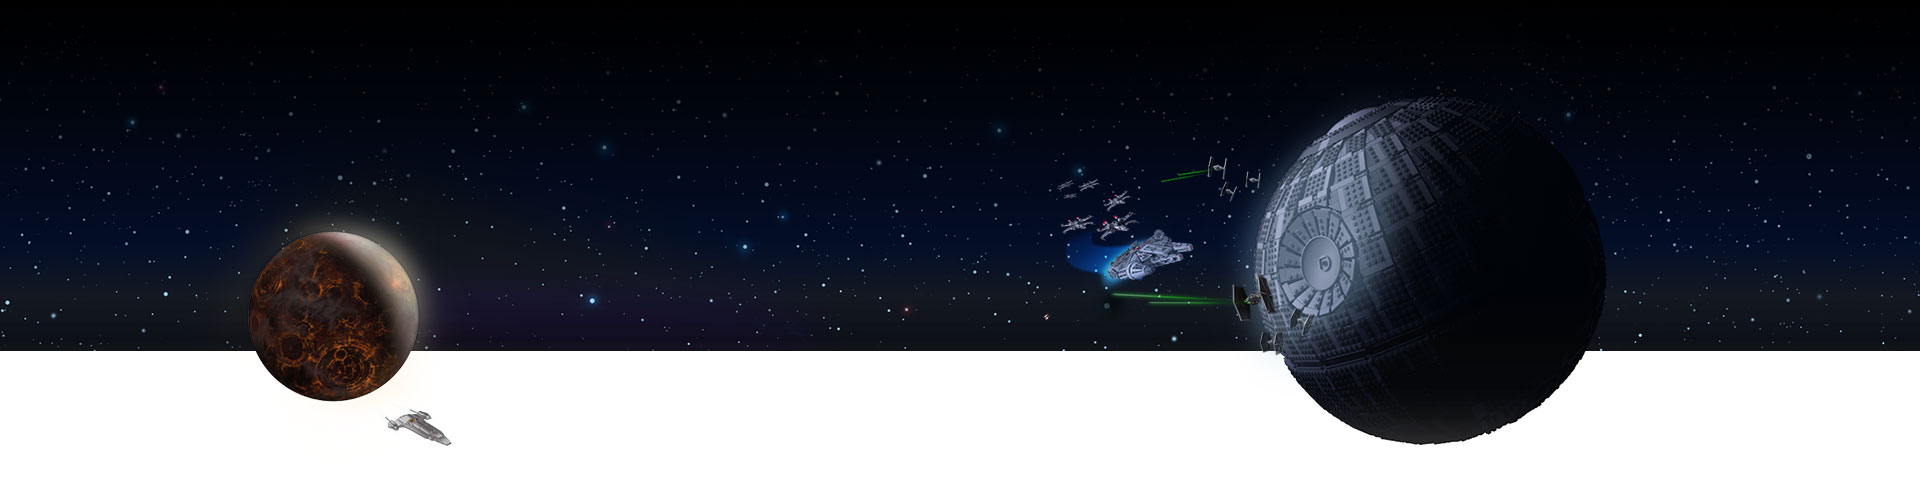 Zwei feindliche Stützpunkte im Weltraum mit Sternen im Hintergrund.